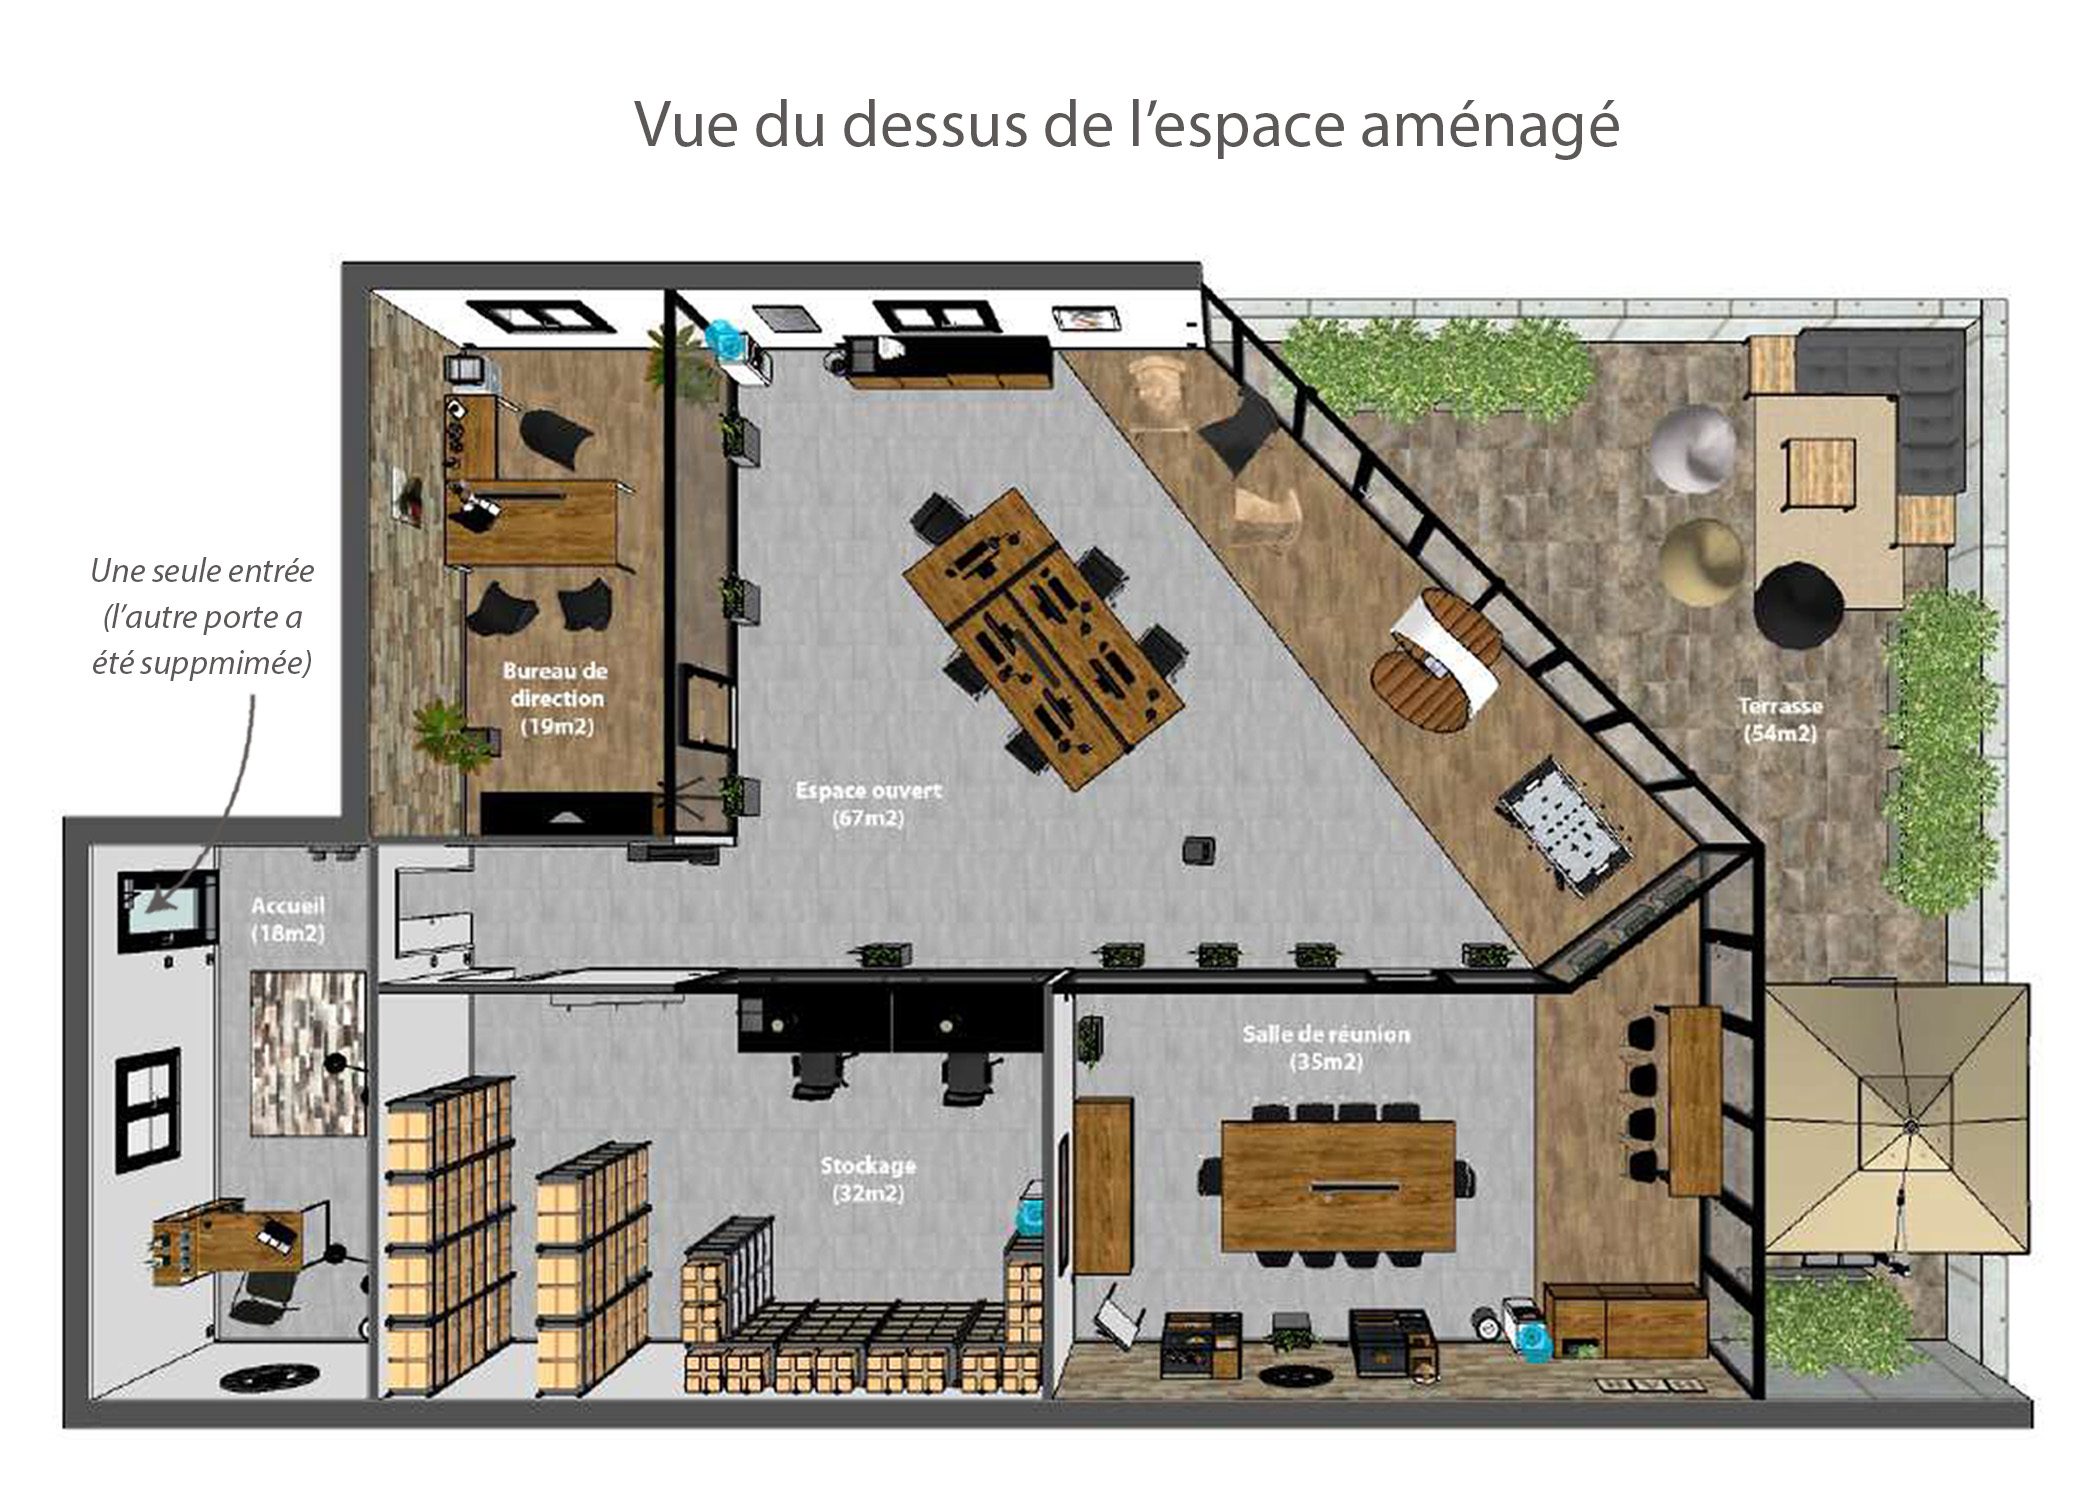 amenagement-decoration-start-up vente en ligne-region parisienne-vue dessus espace amenage-dekho design